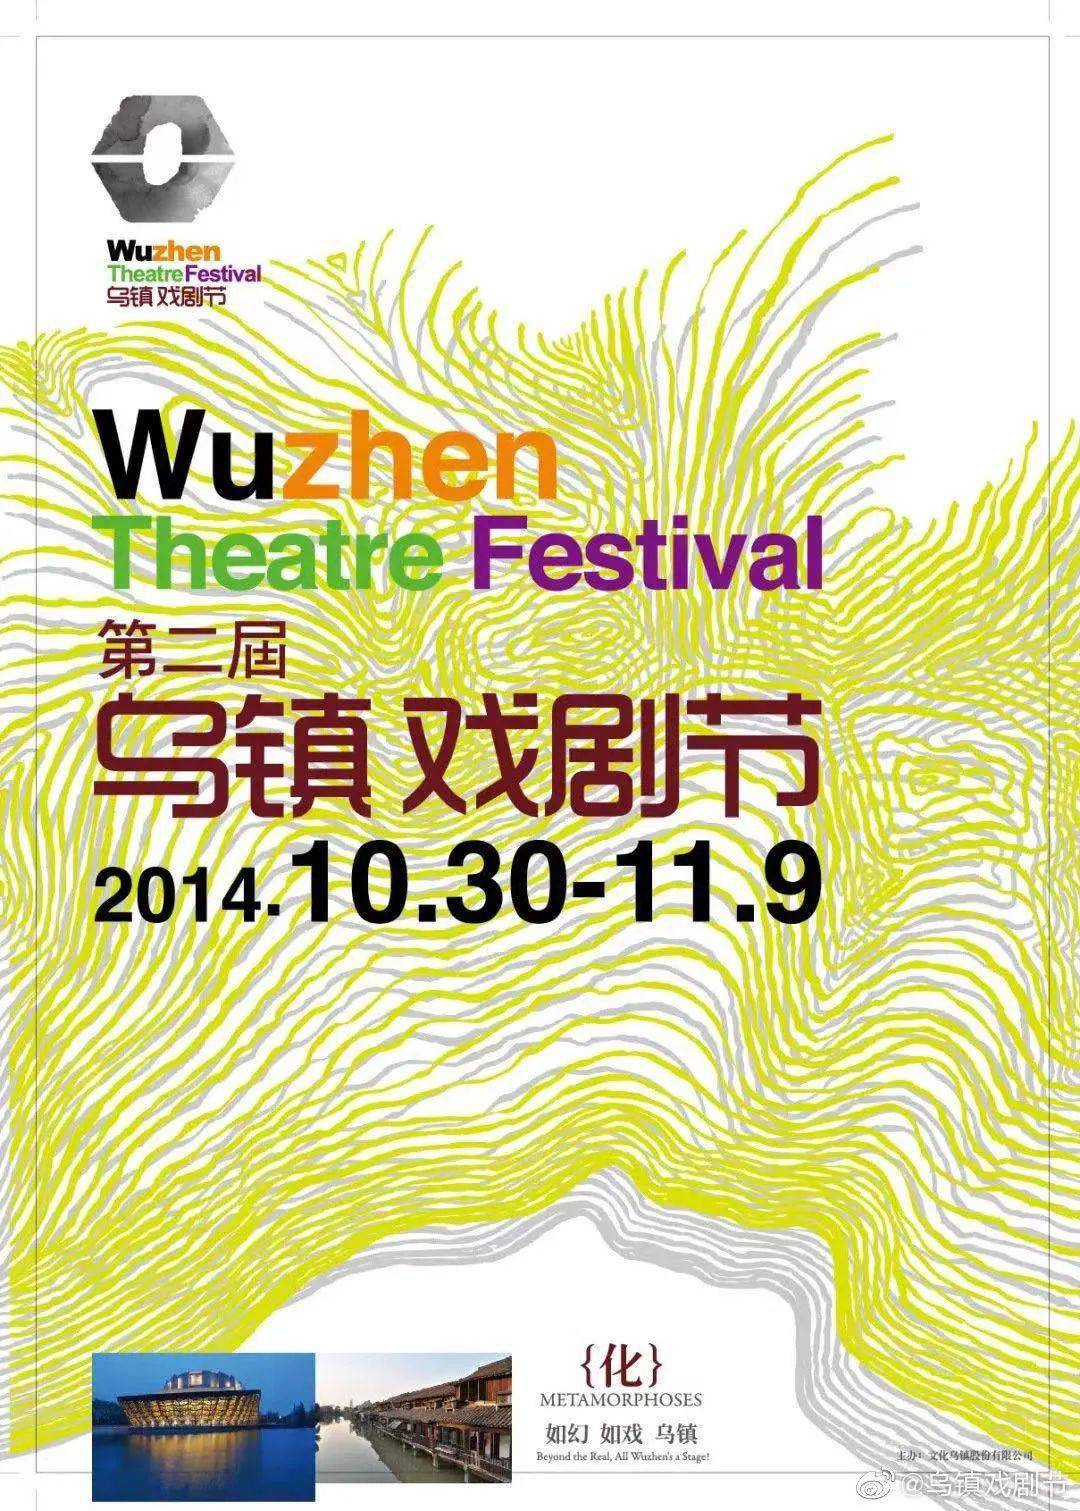 黄海设计「第八届乌镇戏剧节」动态海报来了!